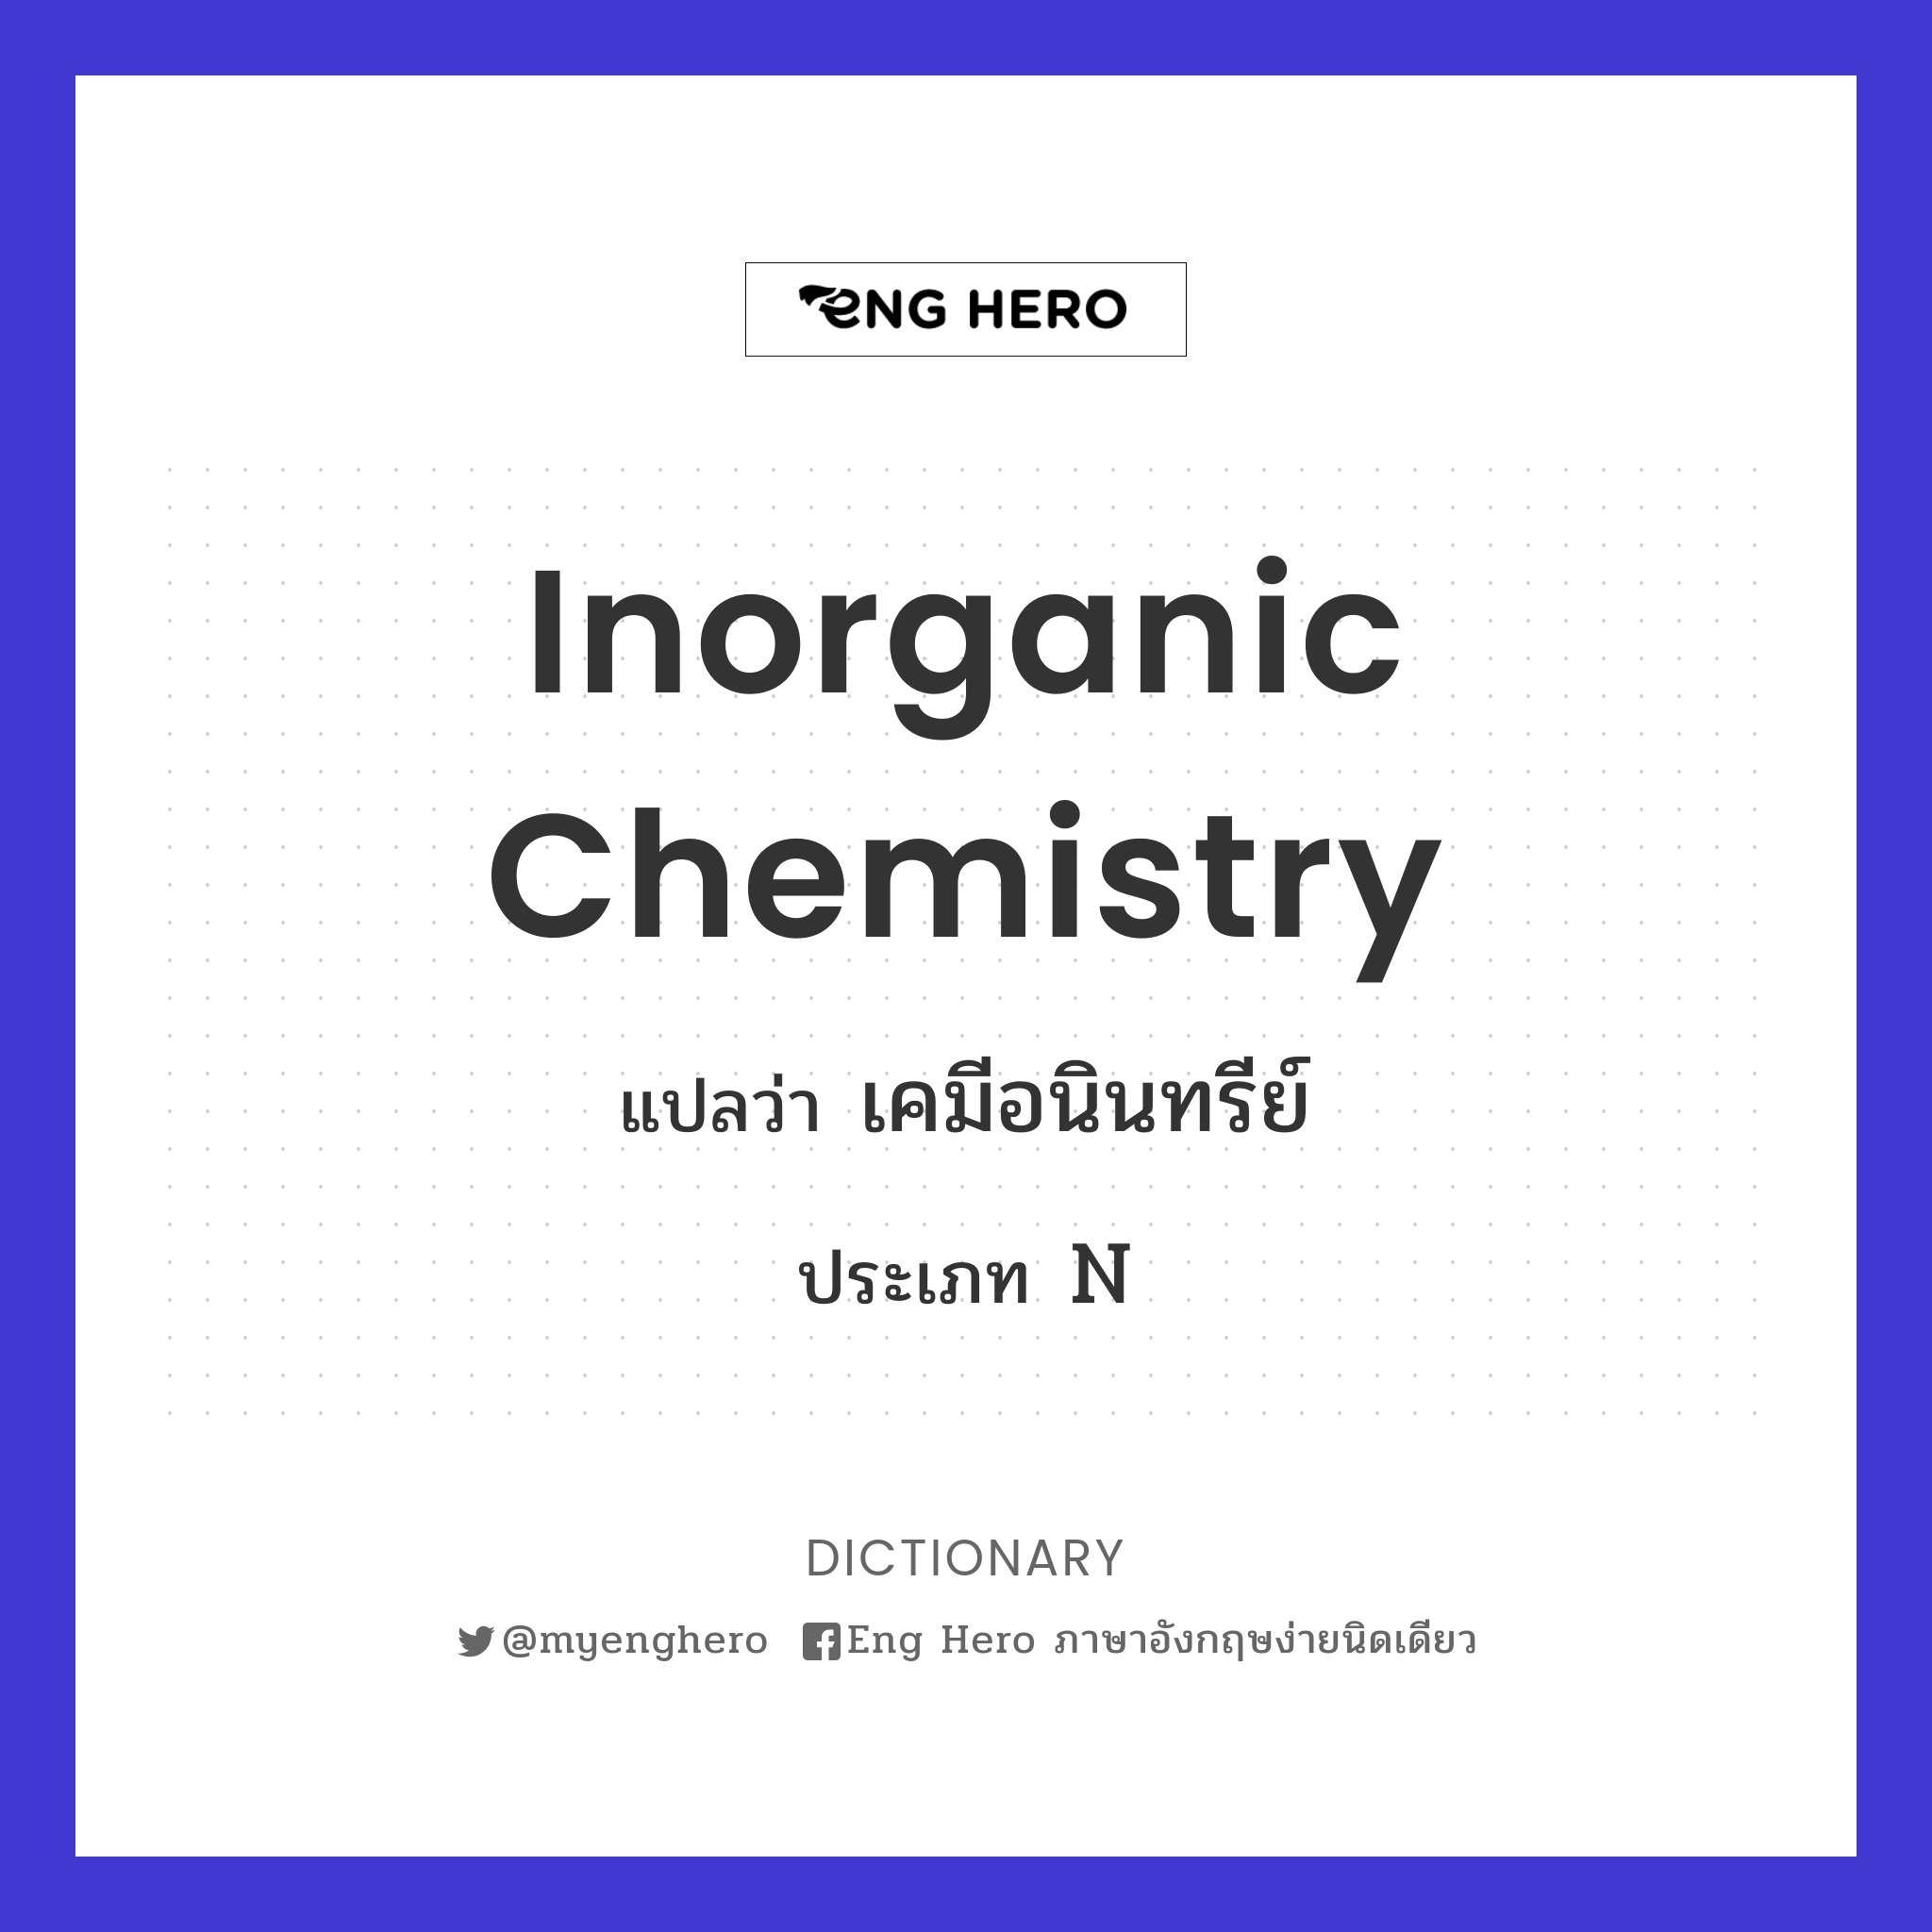 inorganic chemistry